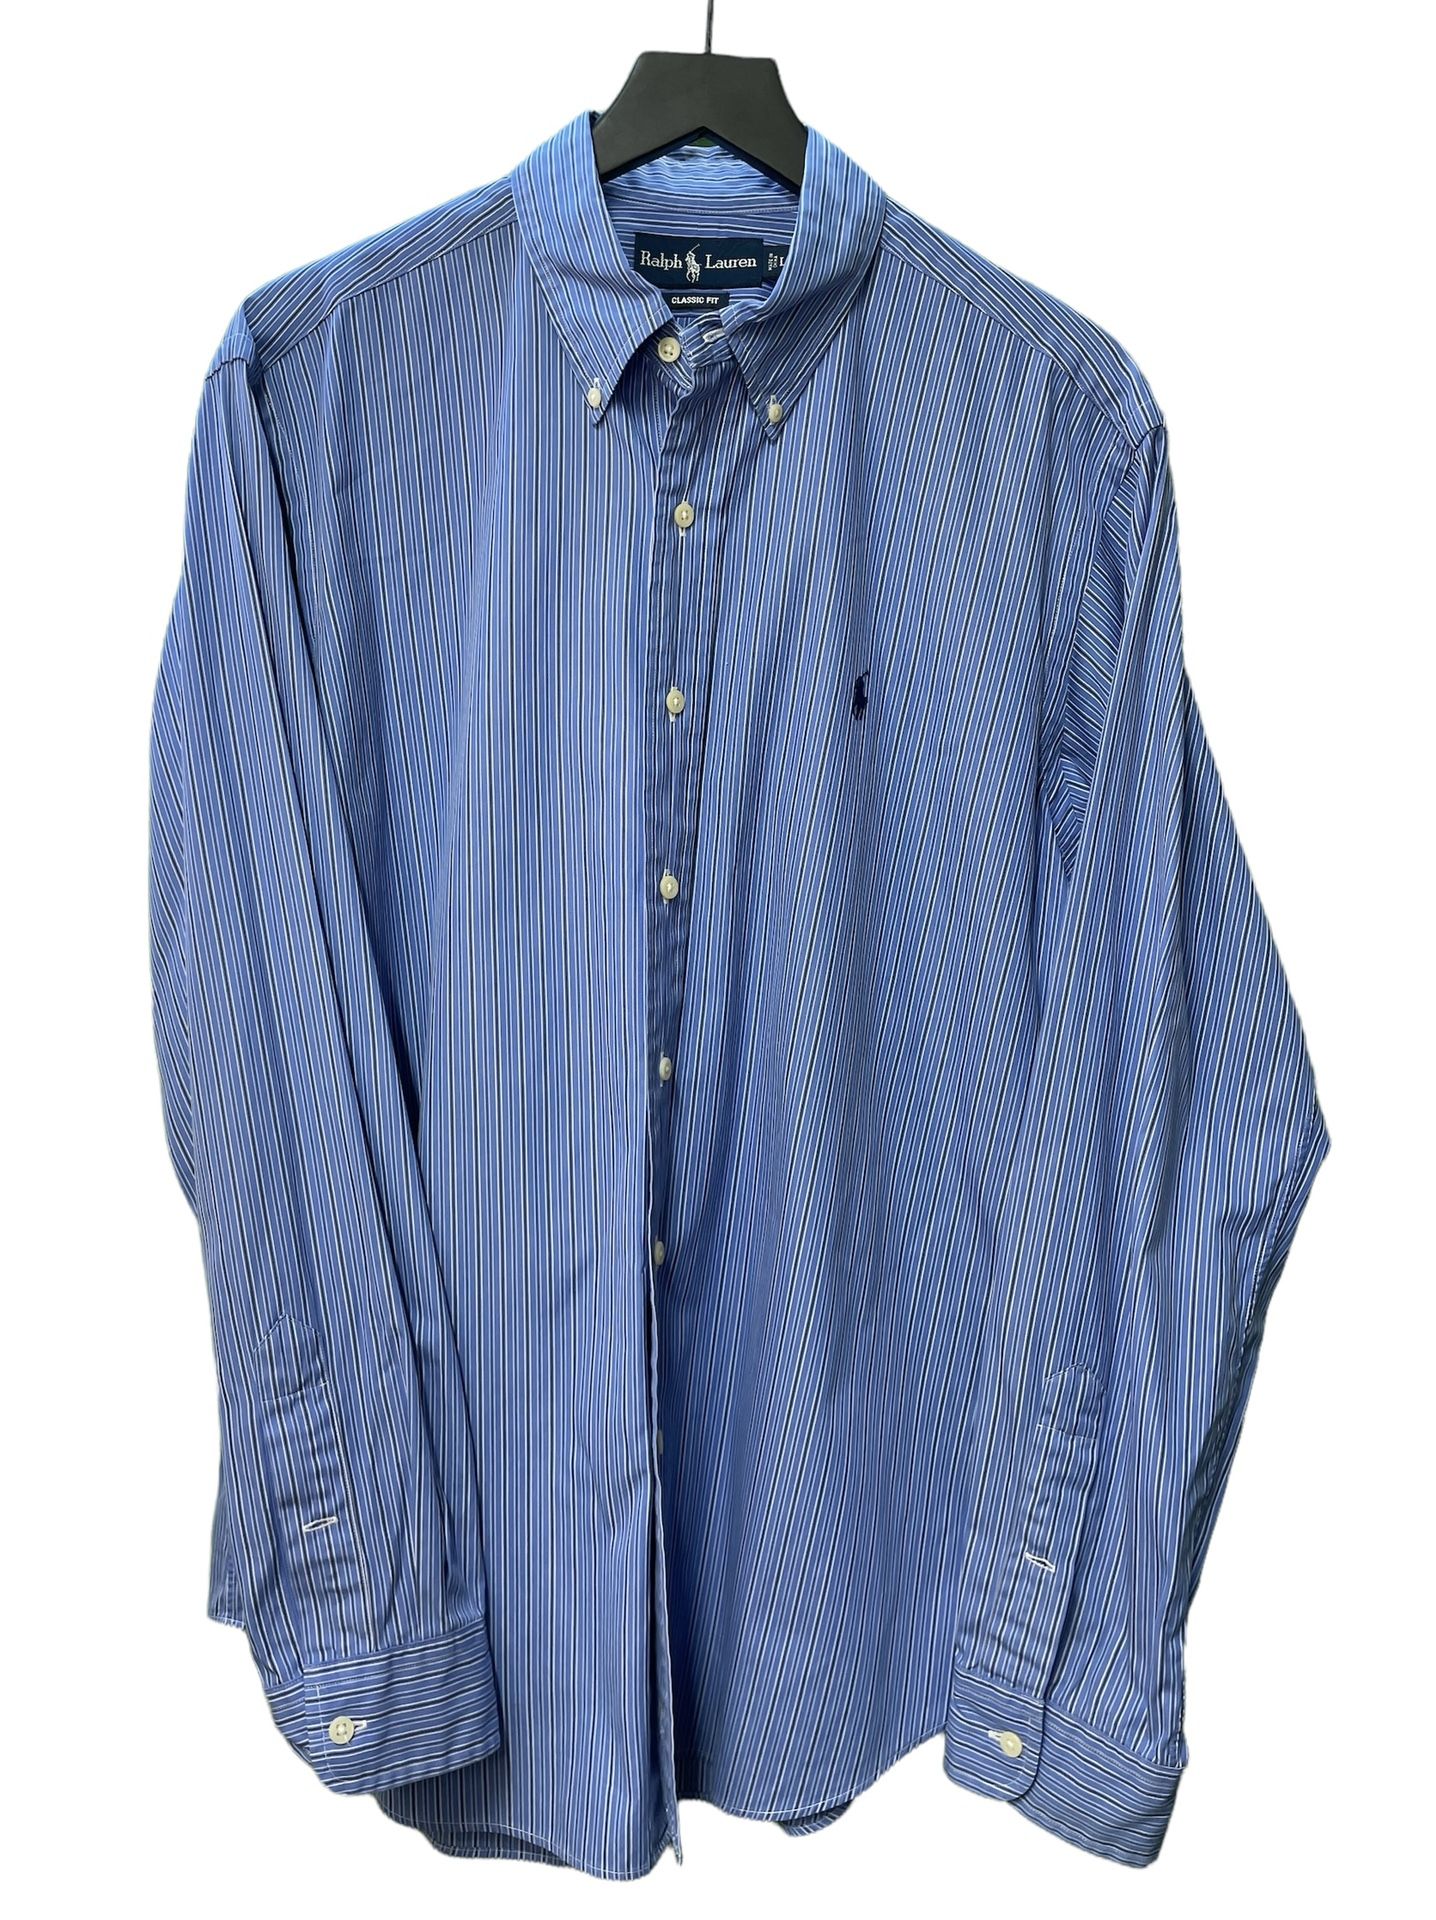 Ralph Lauren Classic Fit Shirt Long Sleeve Blue Stripes Button Down Size L